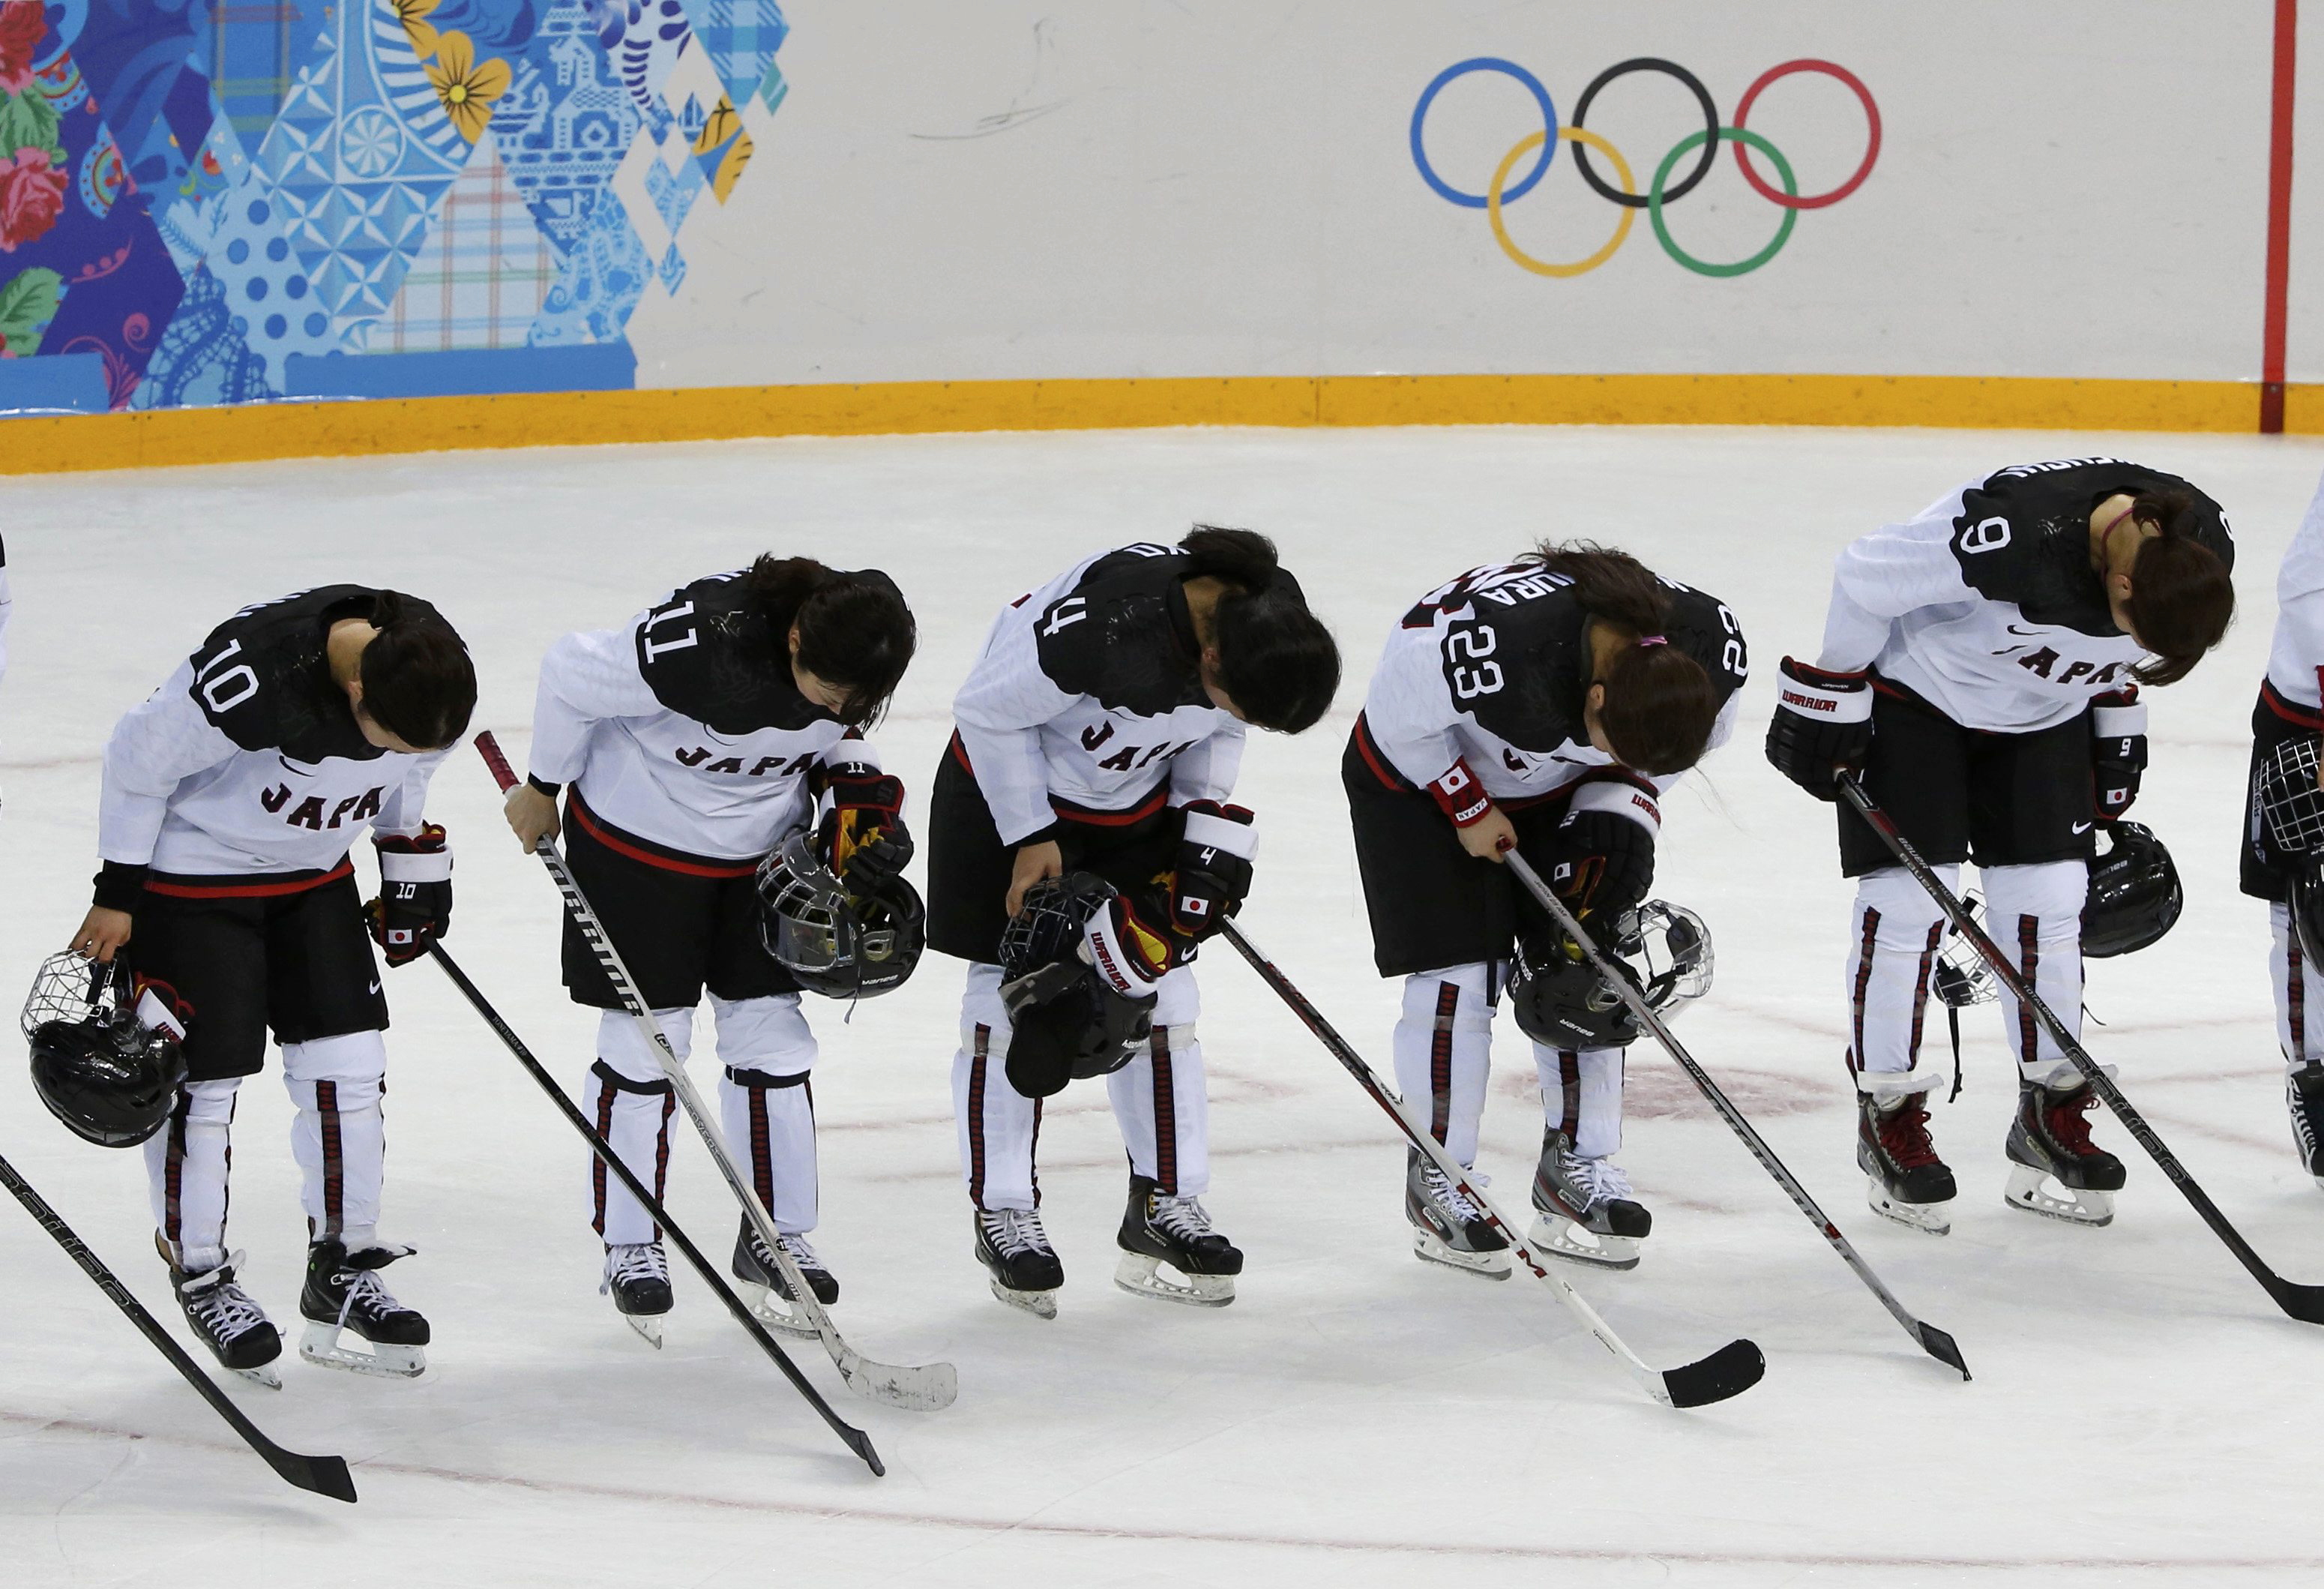 Зимних олимпийских игр хоккей с шайбой. Шайба для хоккея. Хоккей вид спорта. Хоккей с шайбой Сочи 2014. Хоккейная сборная Японии.